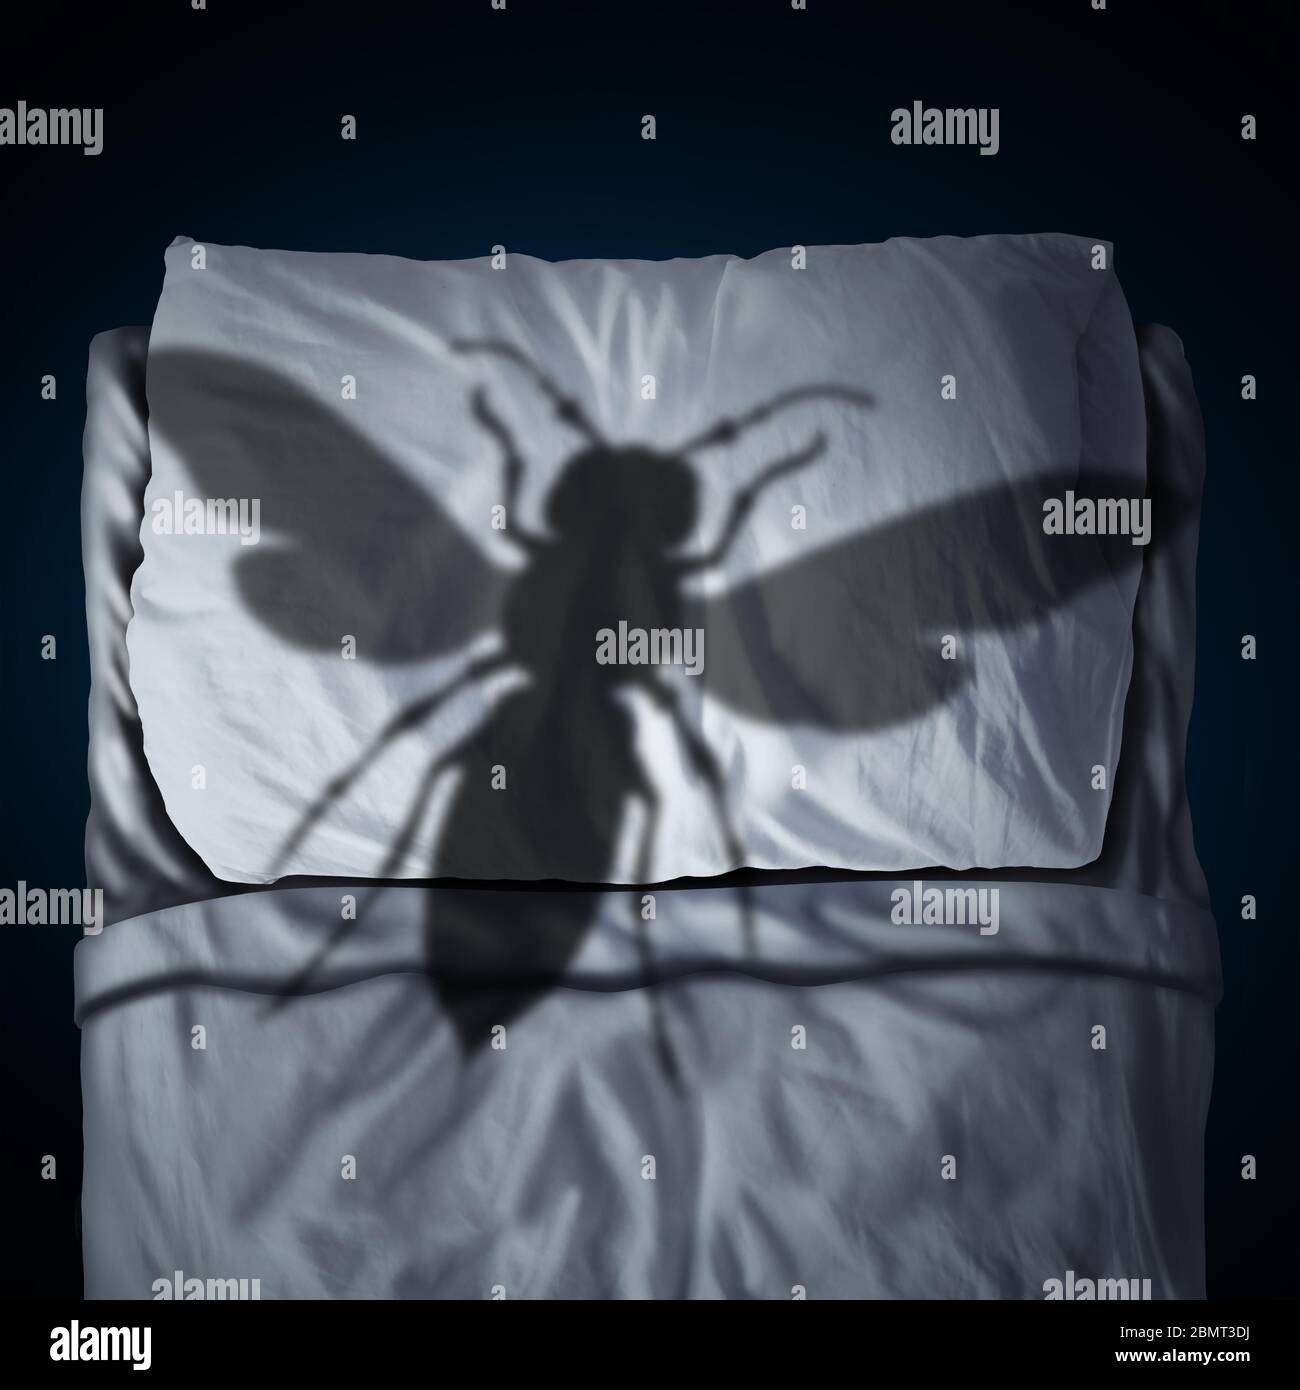 Angst vor Insekten Psychologie Konzept als Insektenphobie oder Entomophobie als riesige Hornisse werfen Schatten auf ein Kissen und Bett als Angst Metapher. Stockfoto